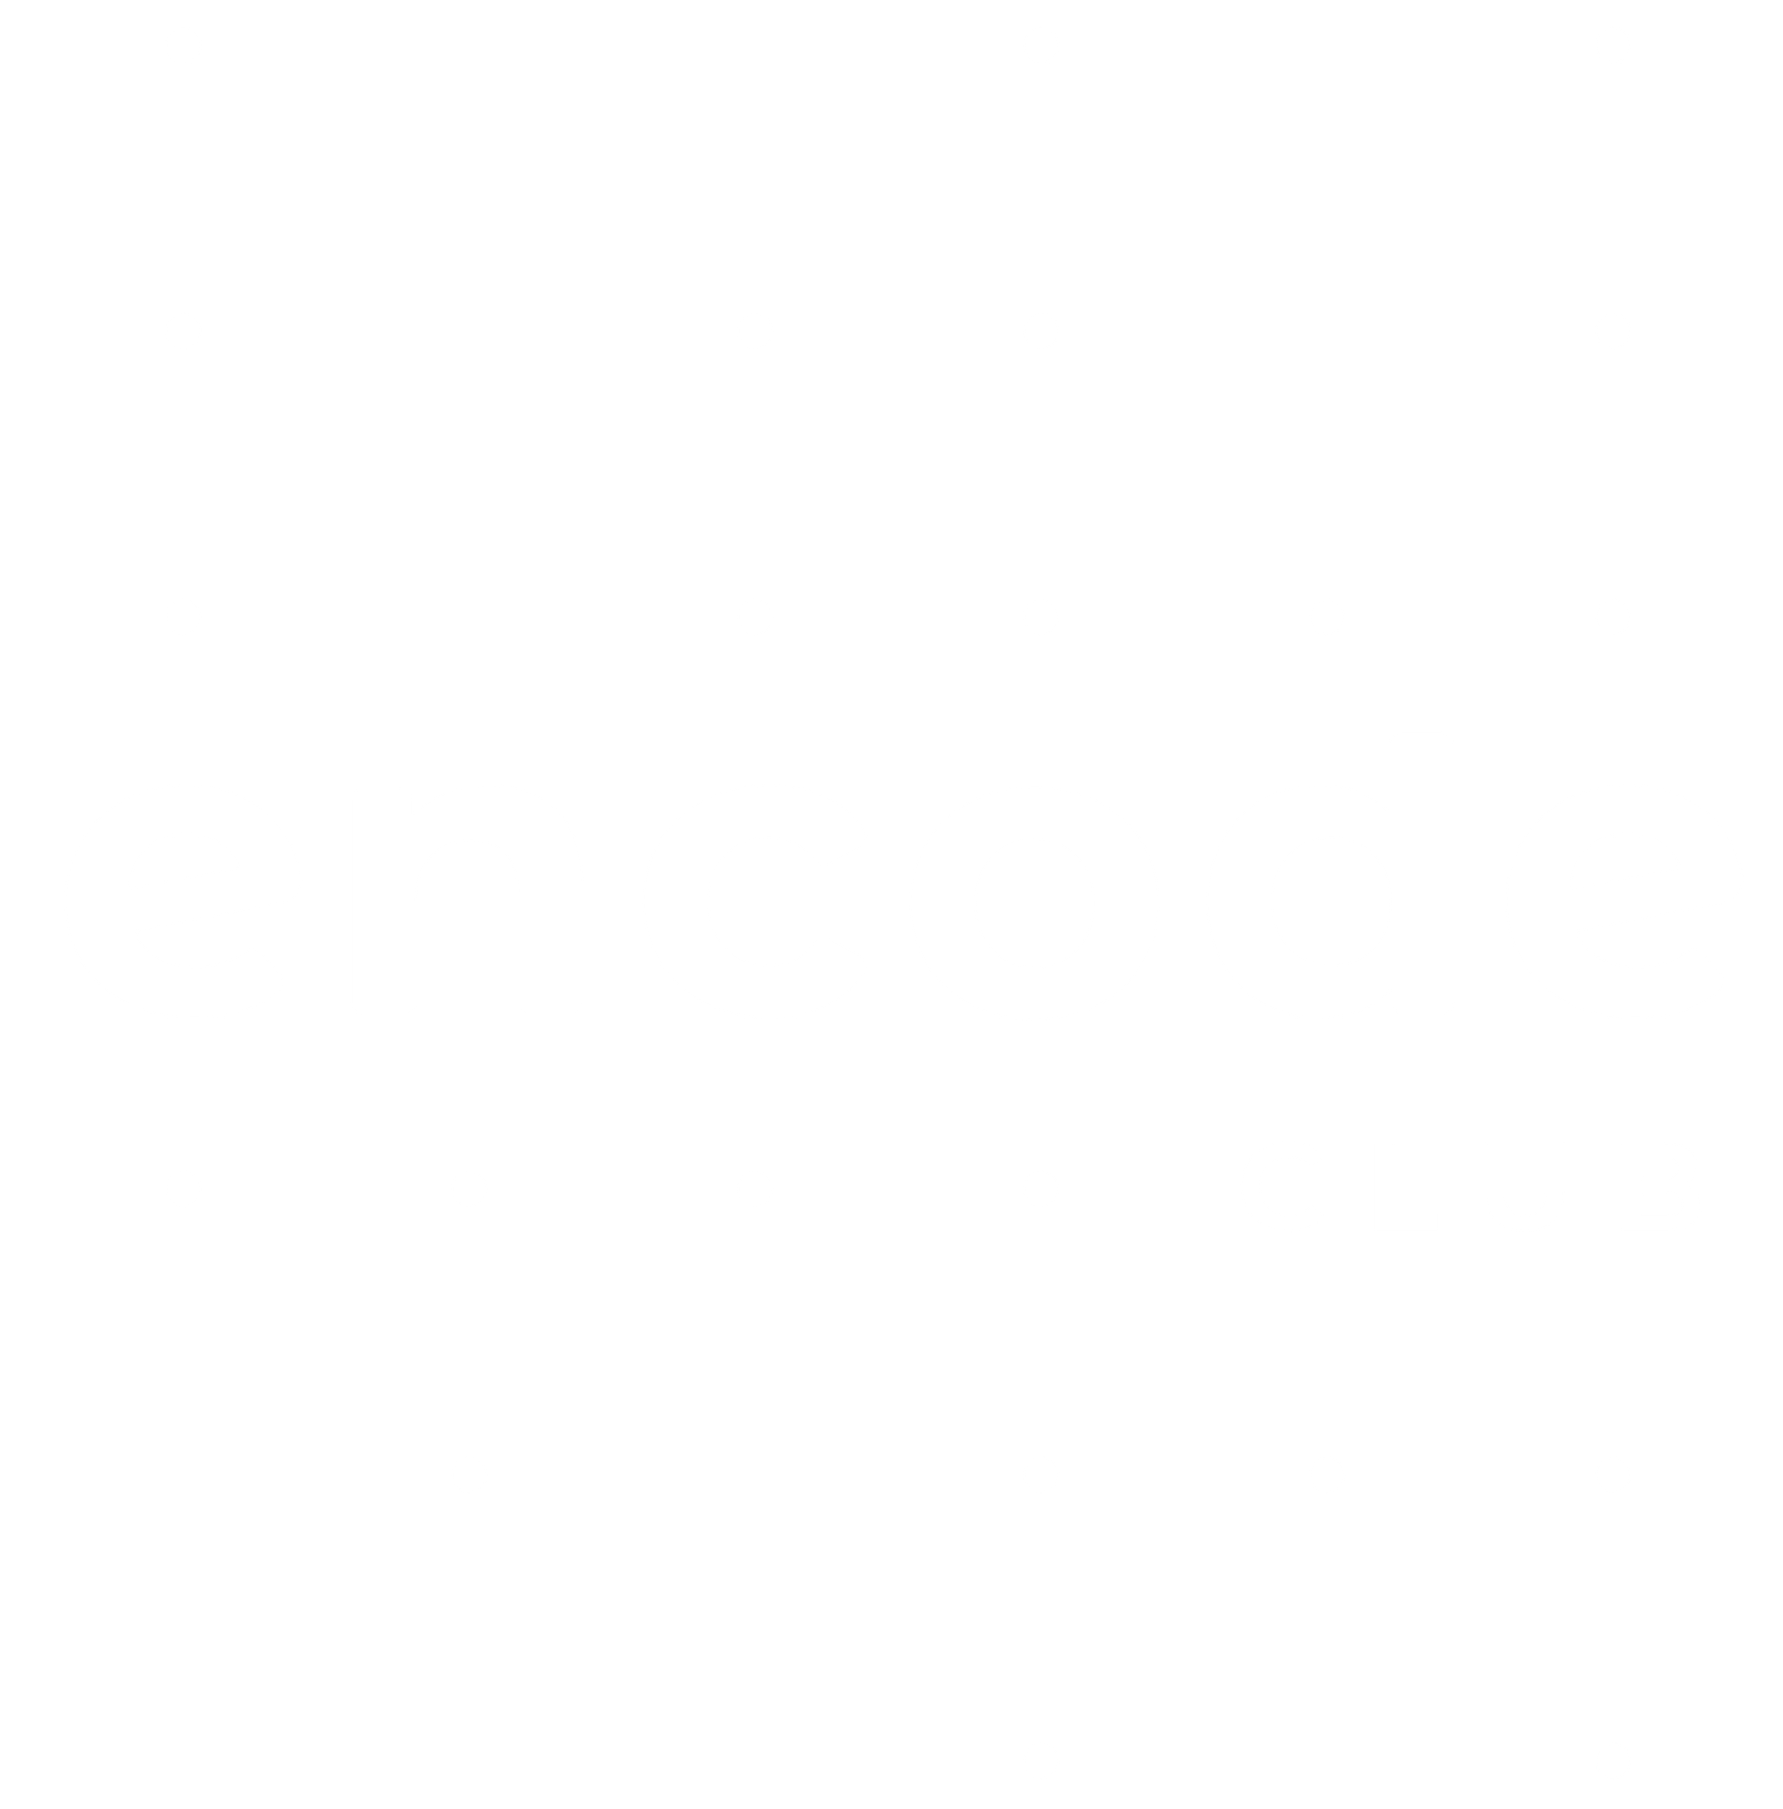 Encode Club